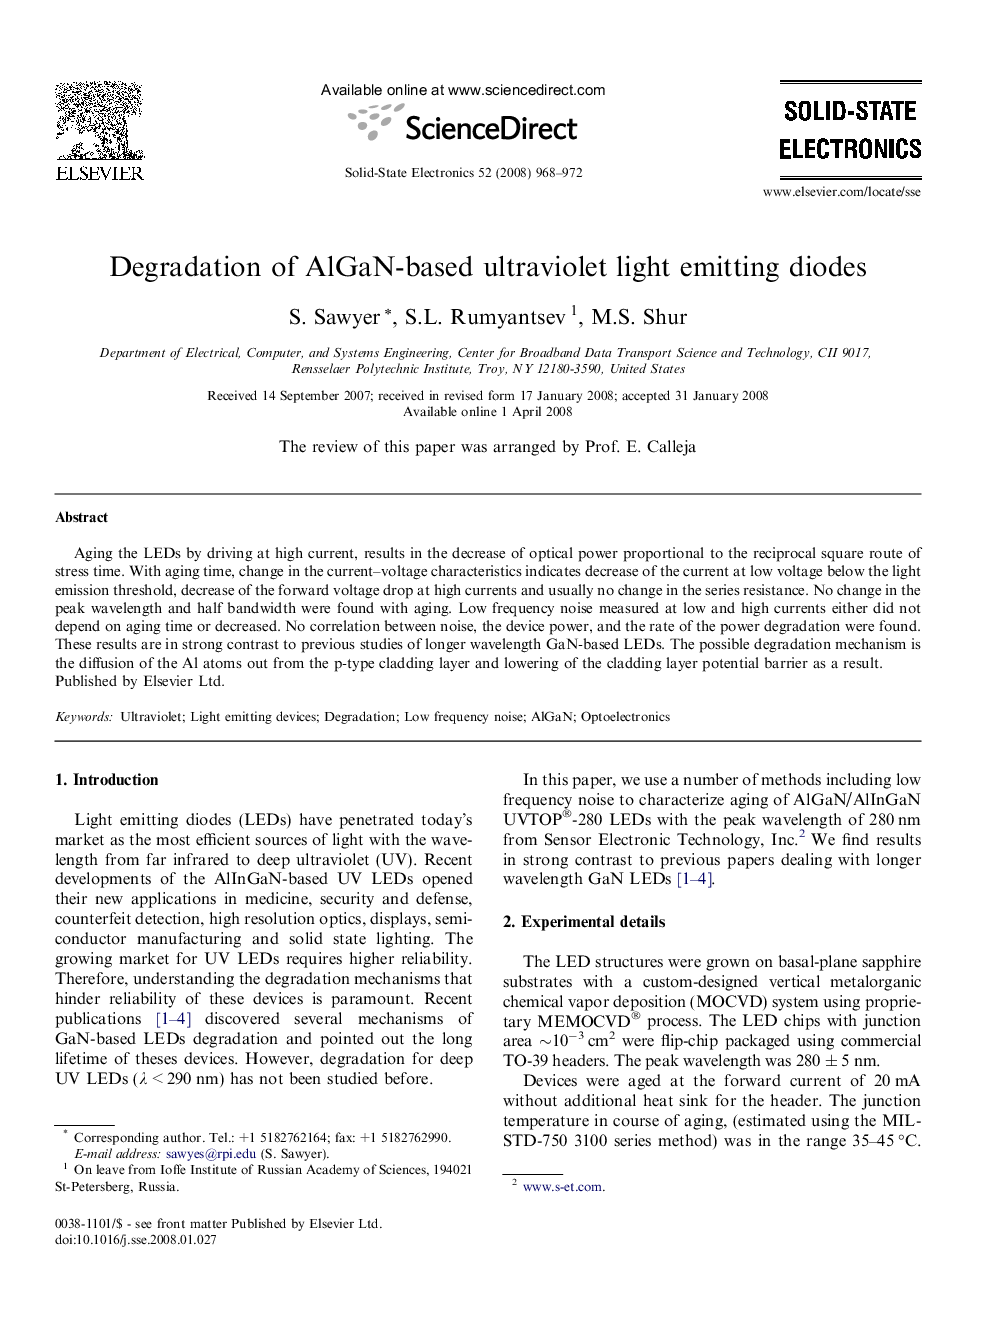 Degradation of AlGaN-based ultraviolet light emitting diodes